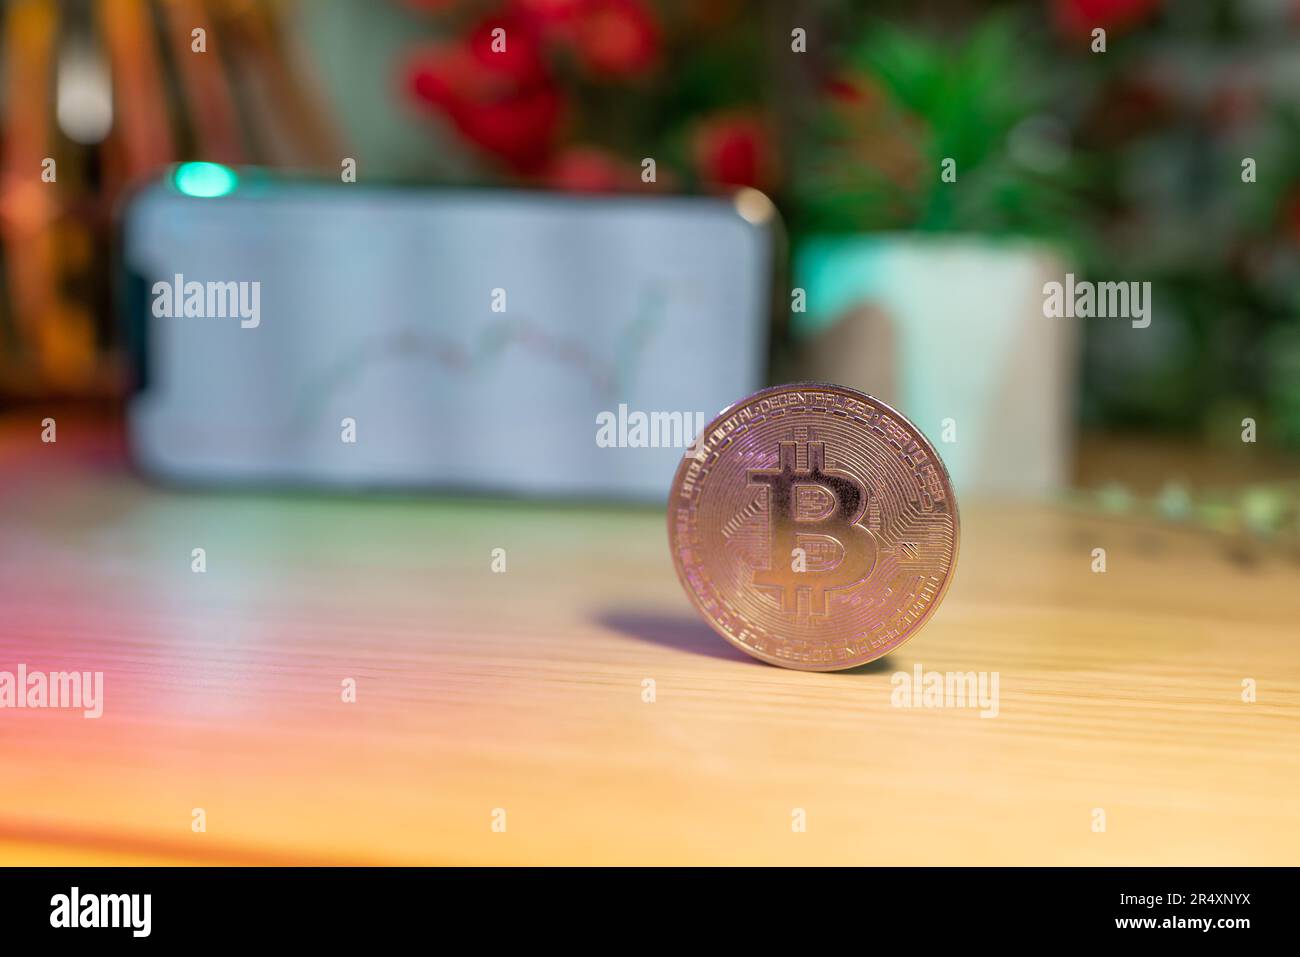 Moneda de oro de Bitcoin delante de la tabla de precios de criptomonedas - concepto y gráfico de criptomonedas - Sistema financiero y clase de inversión Foto de stock